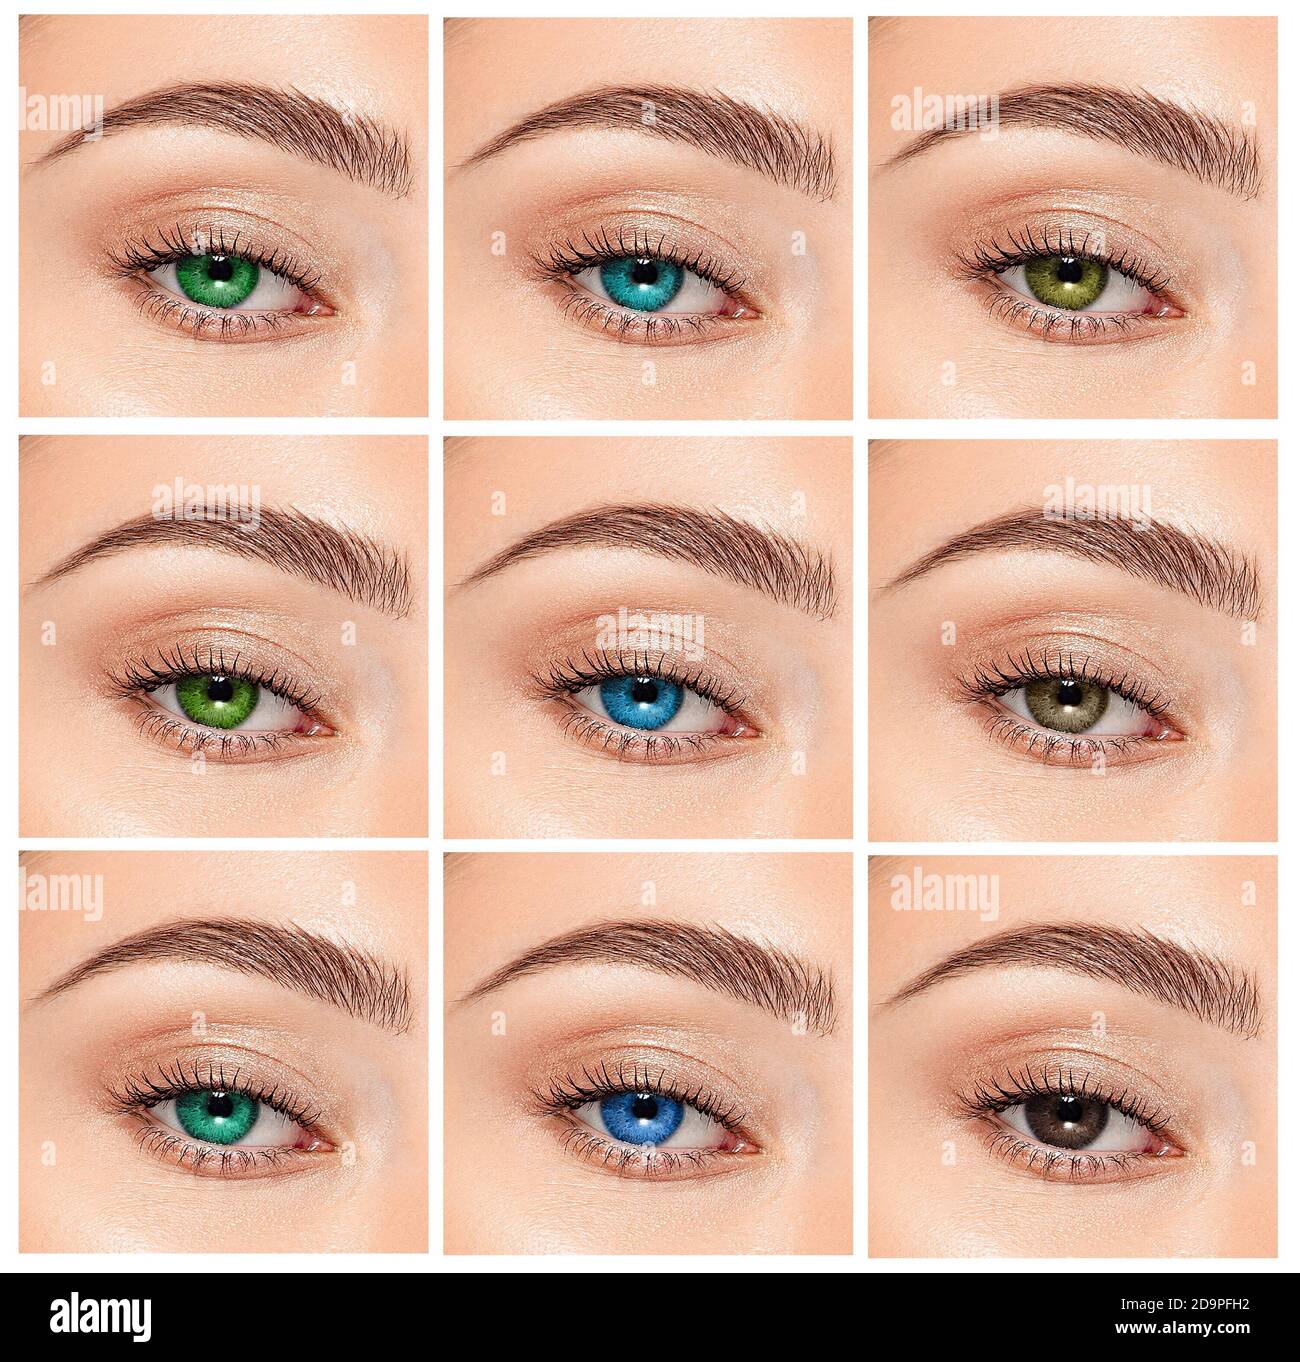 Gros plan, collage des yeux de différentes couleurs, teinte verte, grise et bleue sur les lentilles de contact de couleur sur l'œil humain Banque D'Images